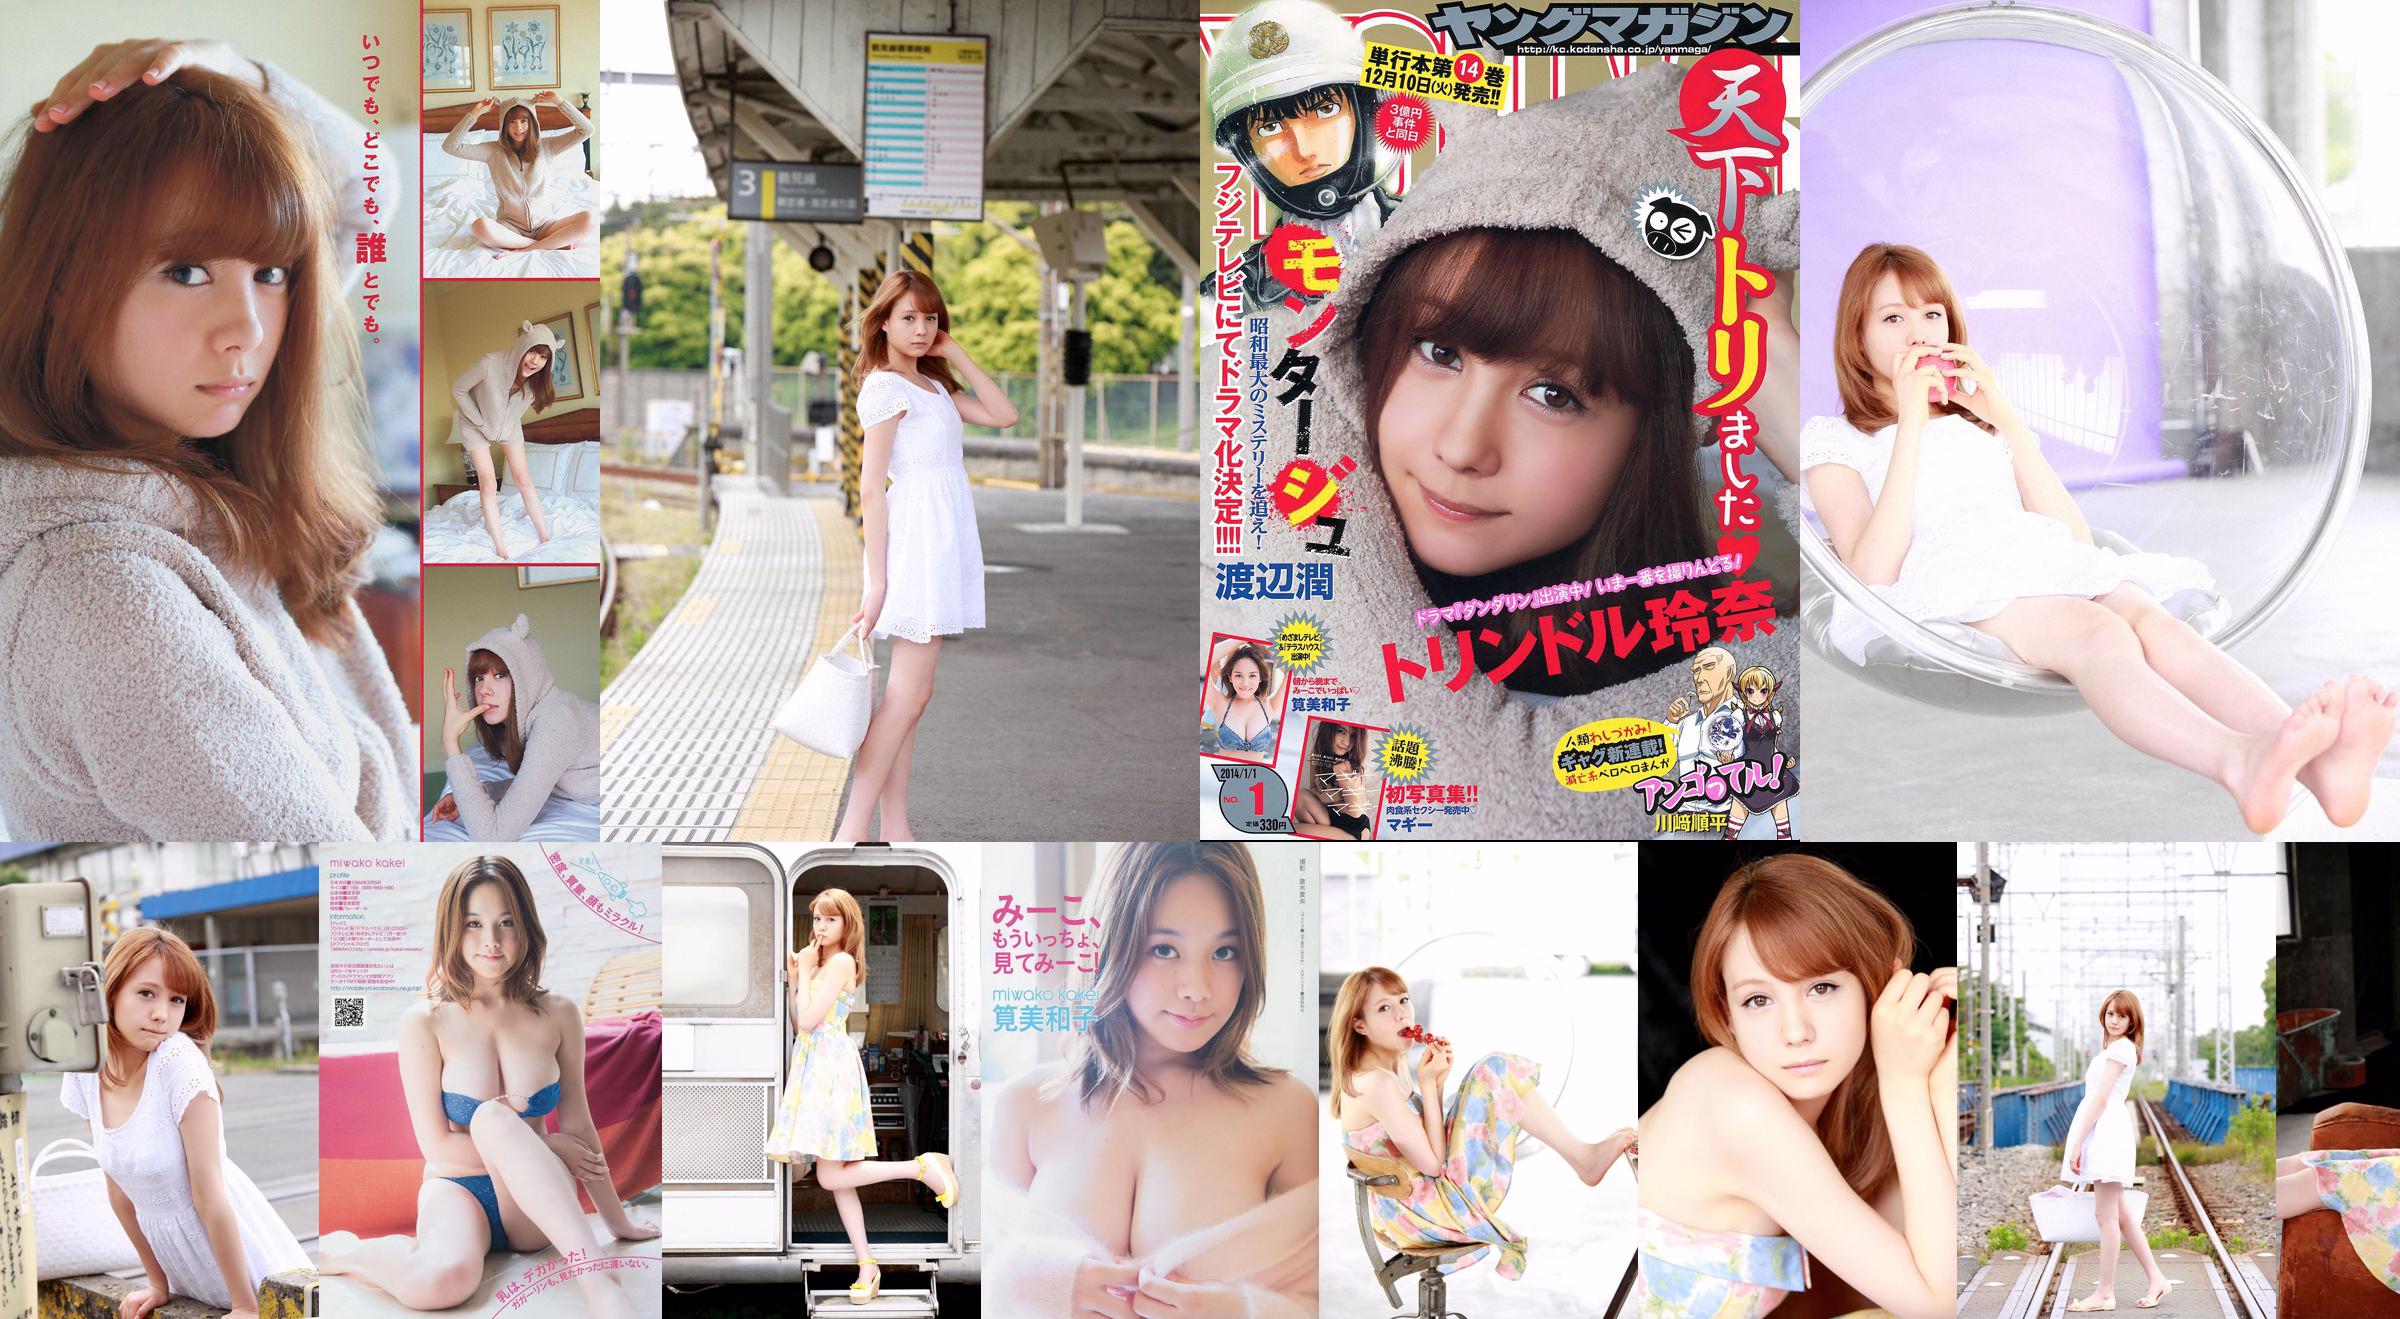 [Young Magazine] Reina Triendl Maggie Miwako Kakei 2014 No.01 Photograph No.e7a605 Page 2